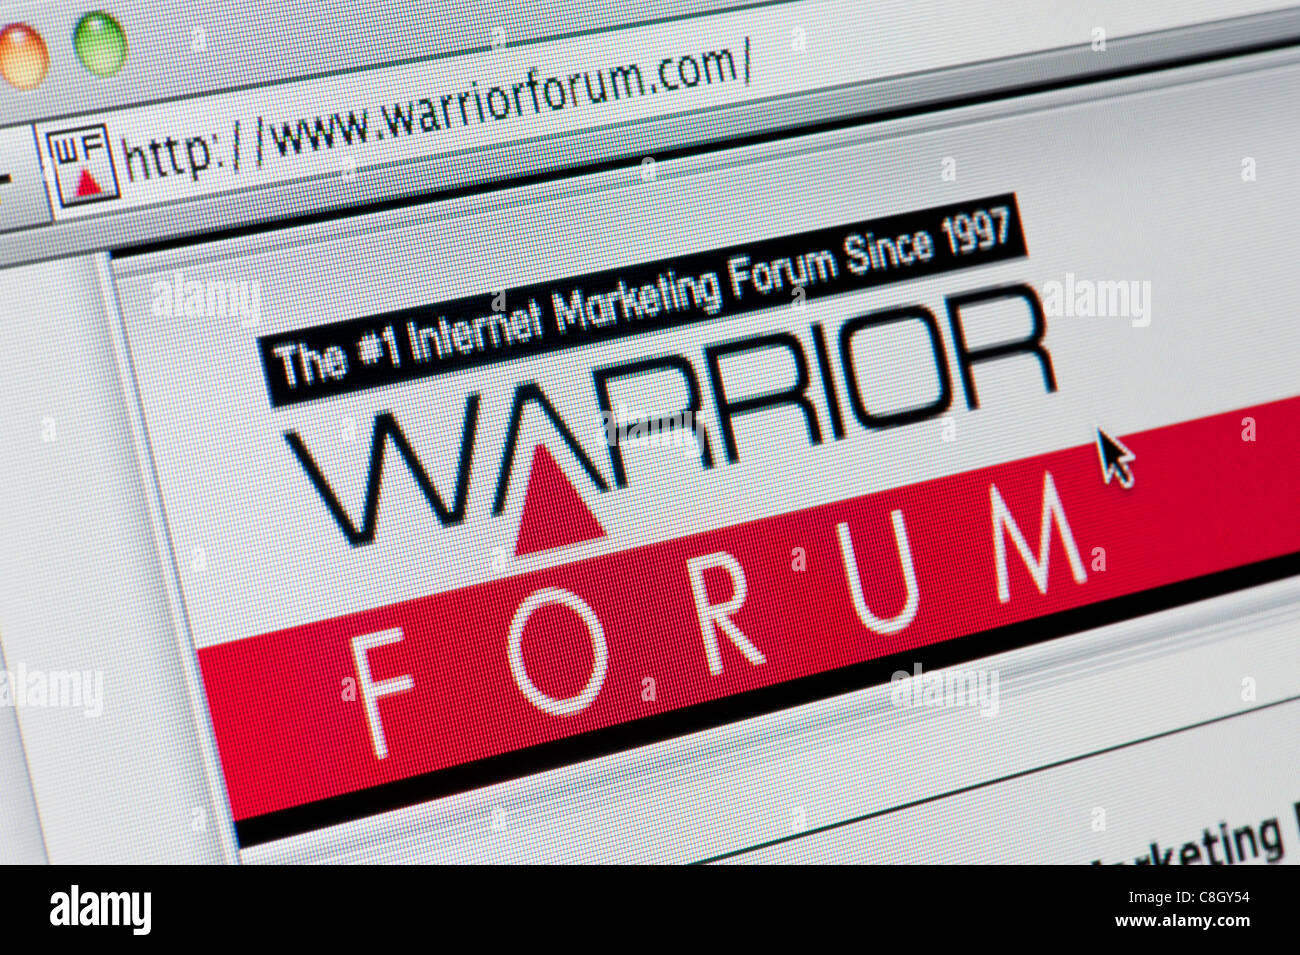 BLING Vaping - Warrior Forum